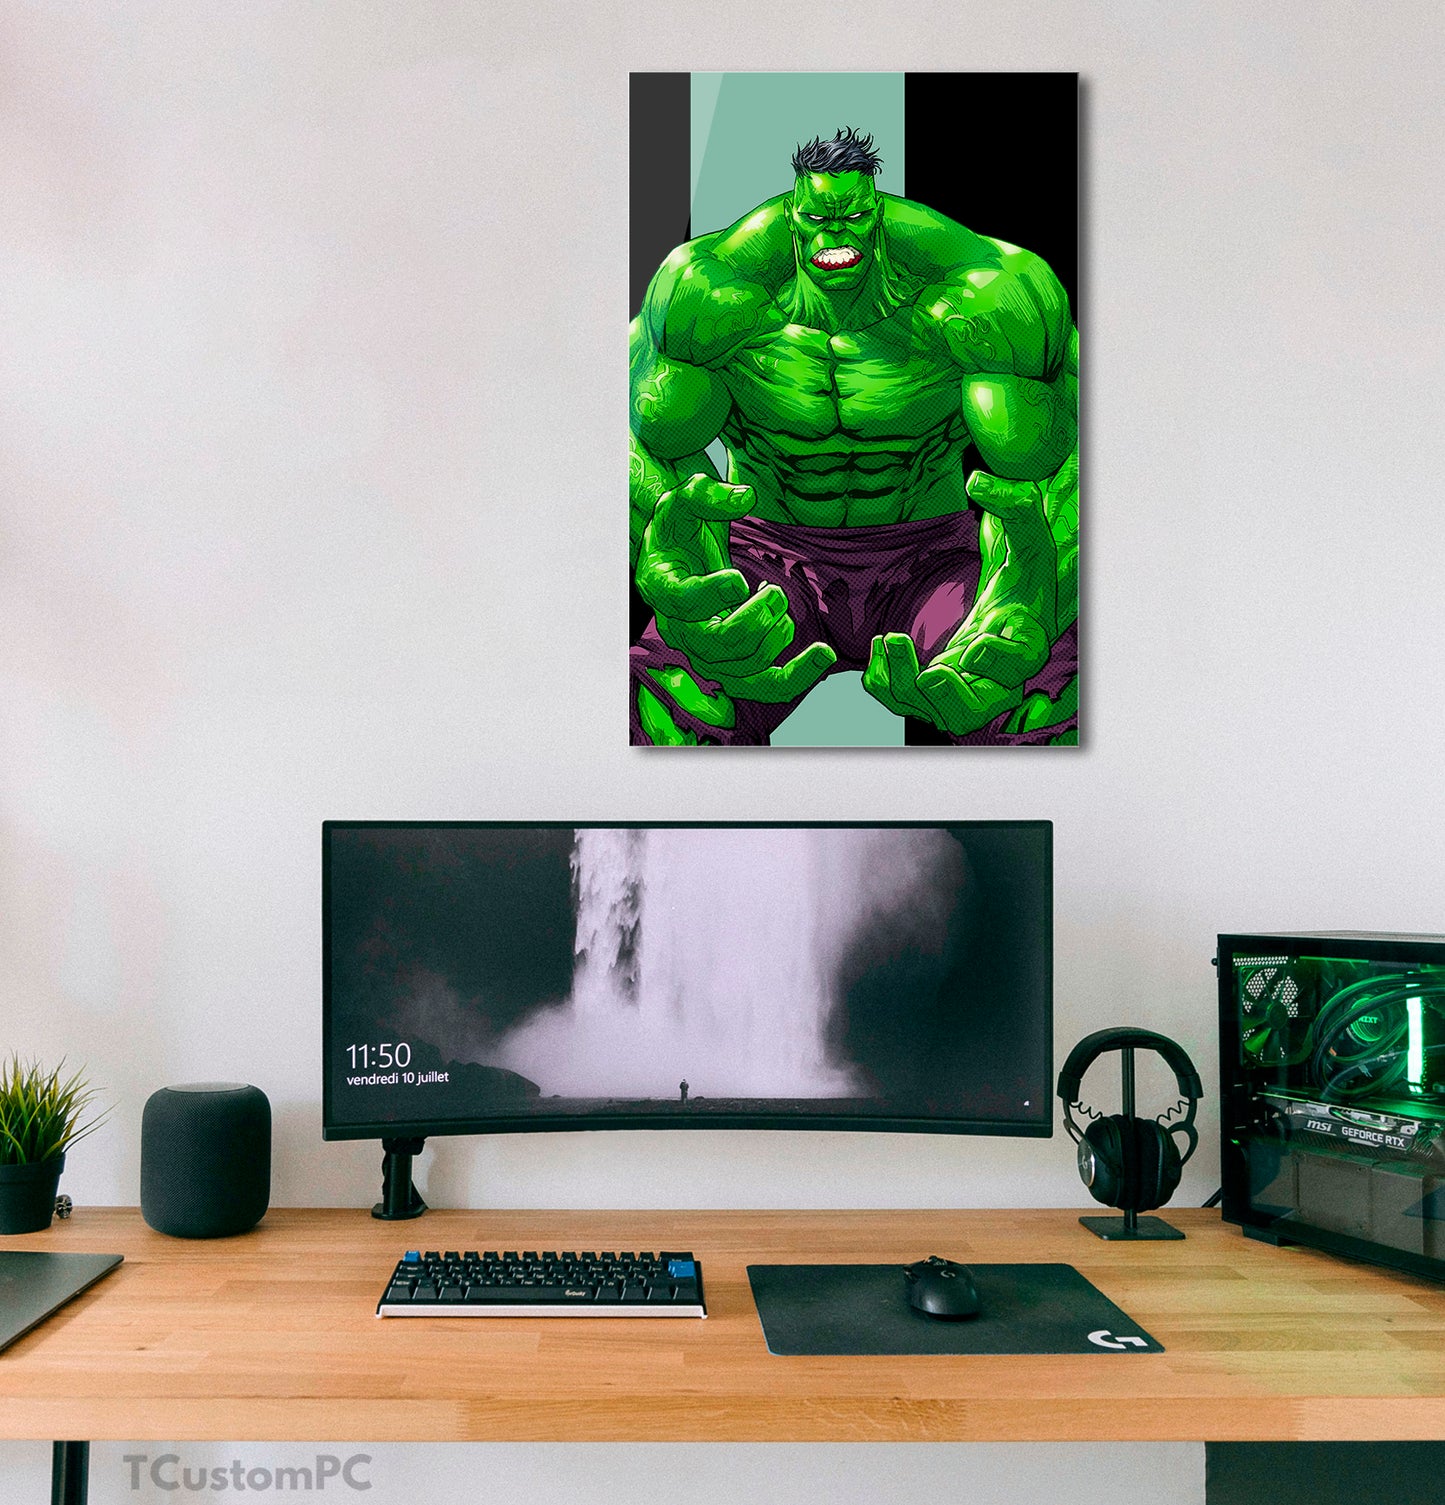 Hulk painting